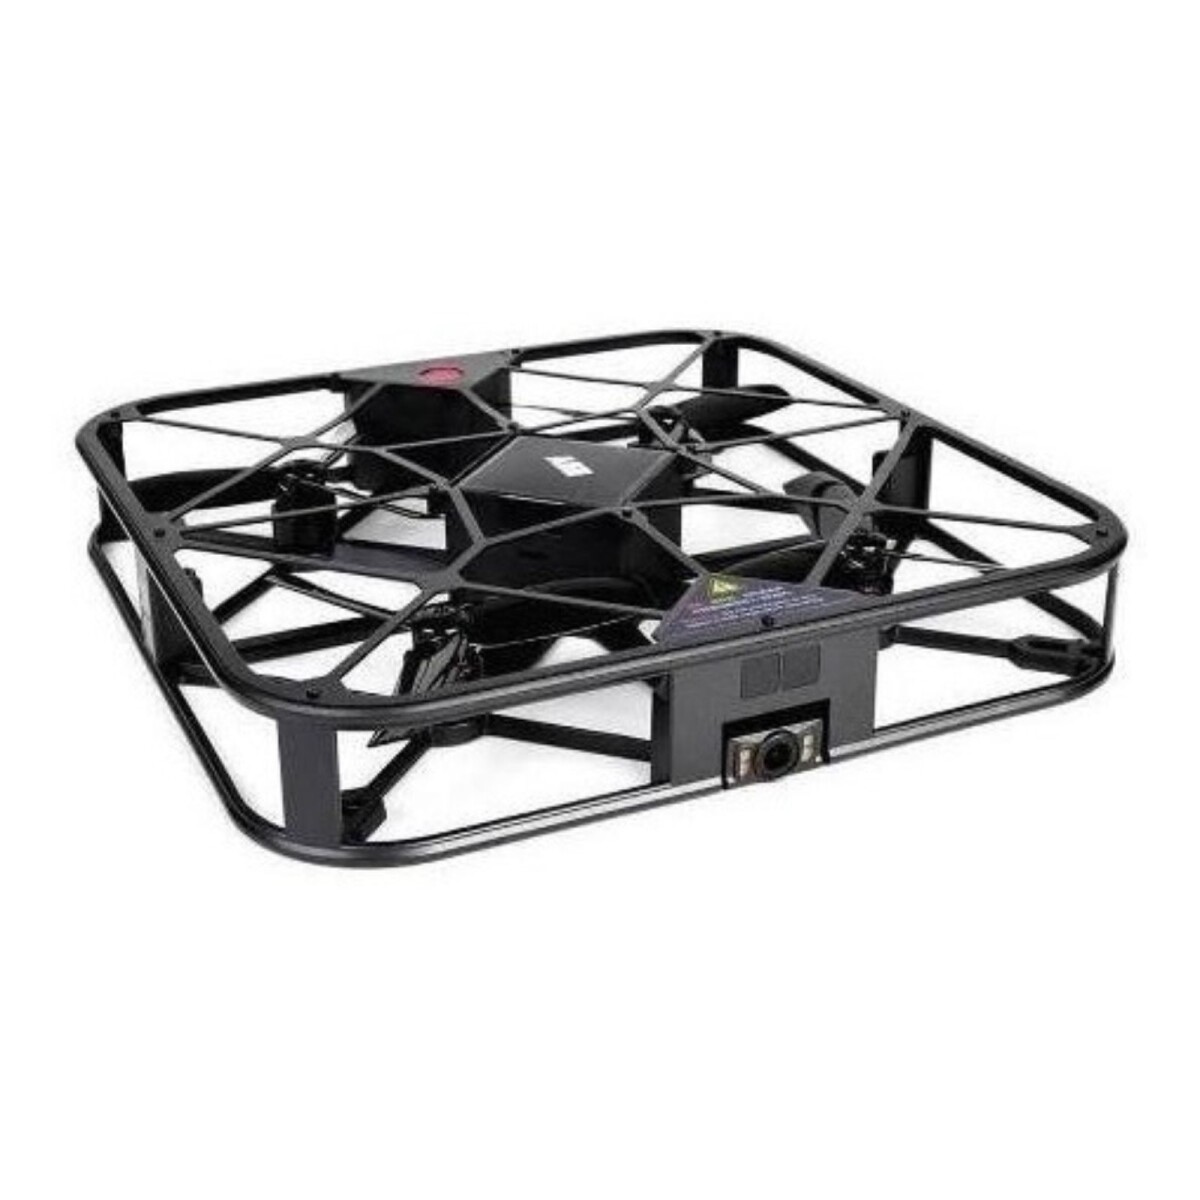 Dron Aee Sparrow 360 Wifi Camara 12mp Modelo A10 Control App 